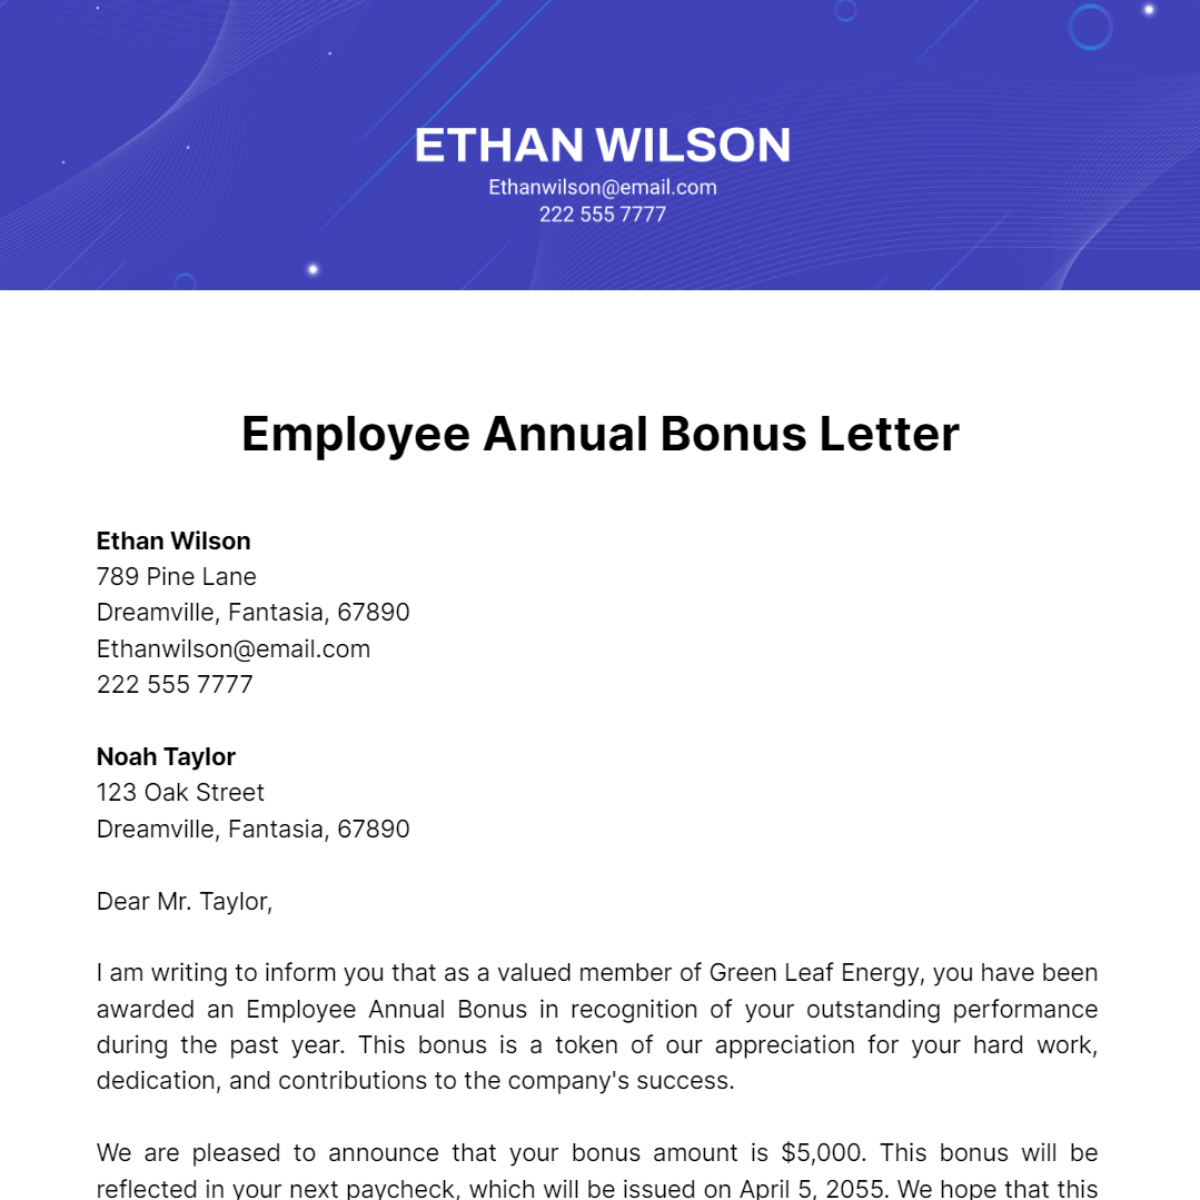 Employee Annual Bonus Letter Template